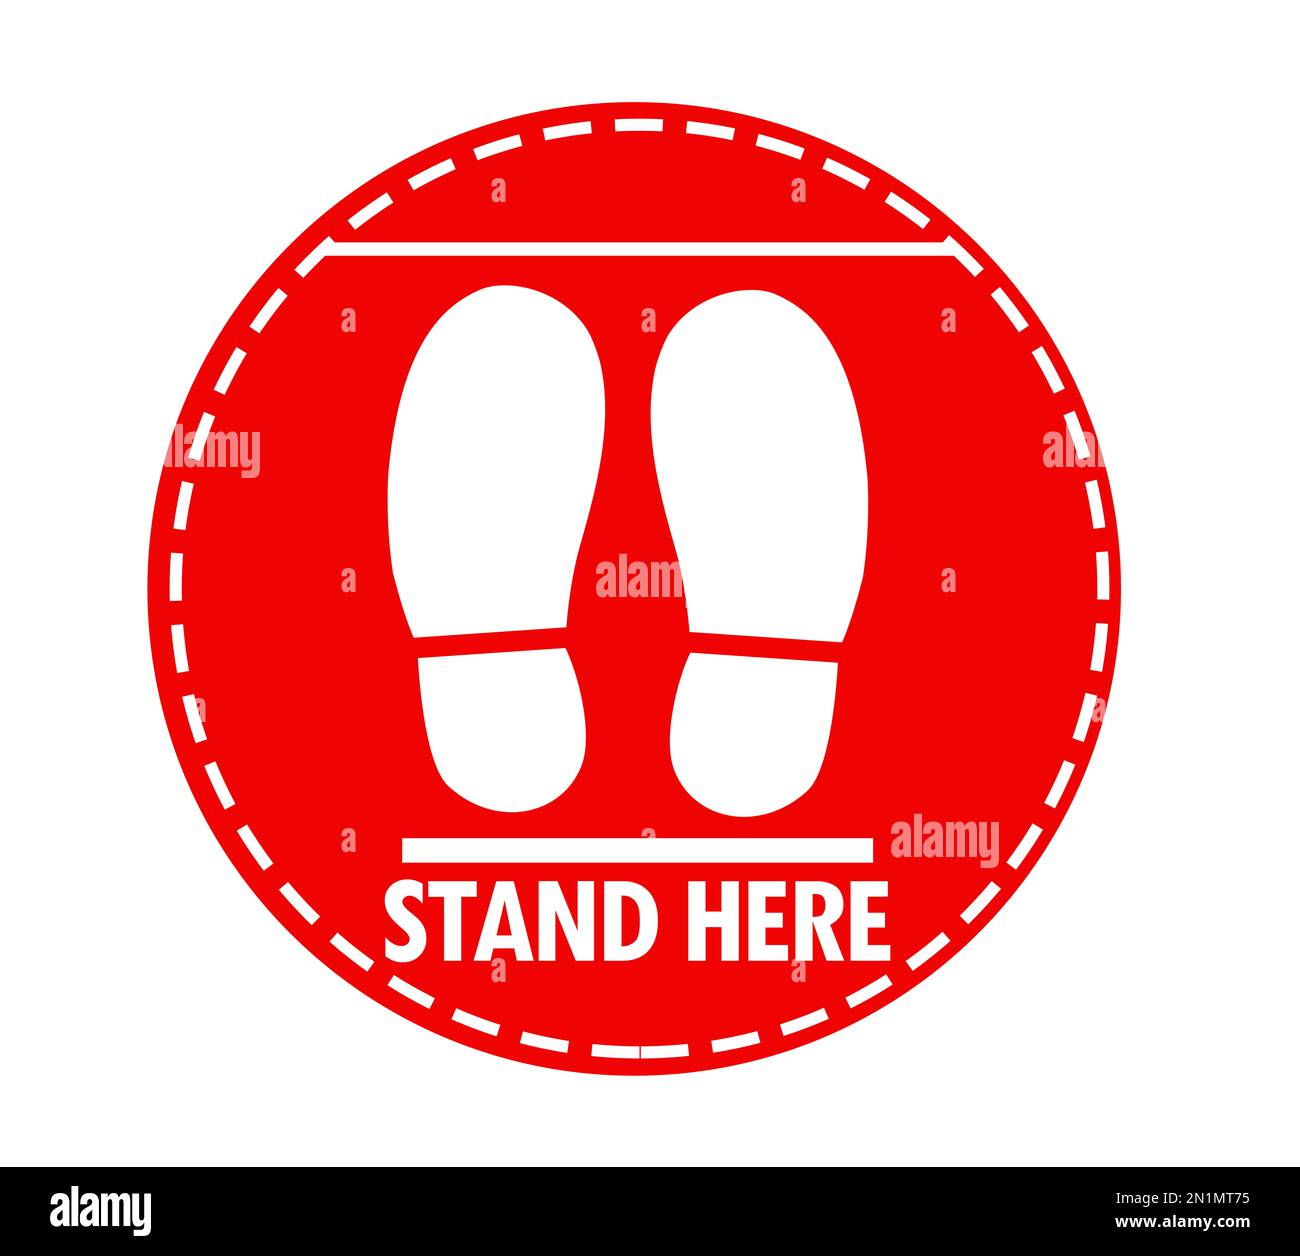 Affiche ronde rouge avec texte Stand Here et chaussures imprimées, illustration. Distance sociale - mesure de protection pendant une pandémie de coronavirus Banque D'Images